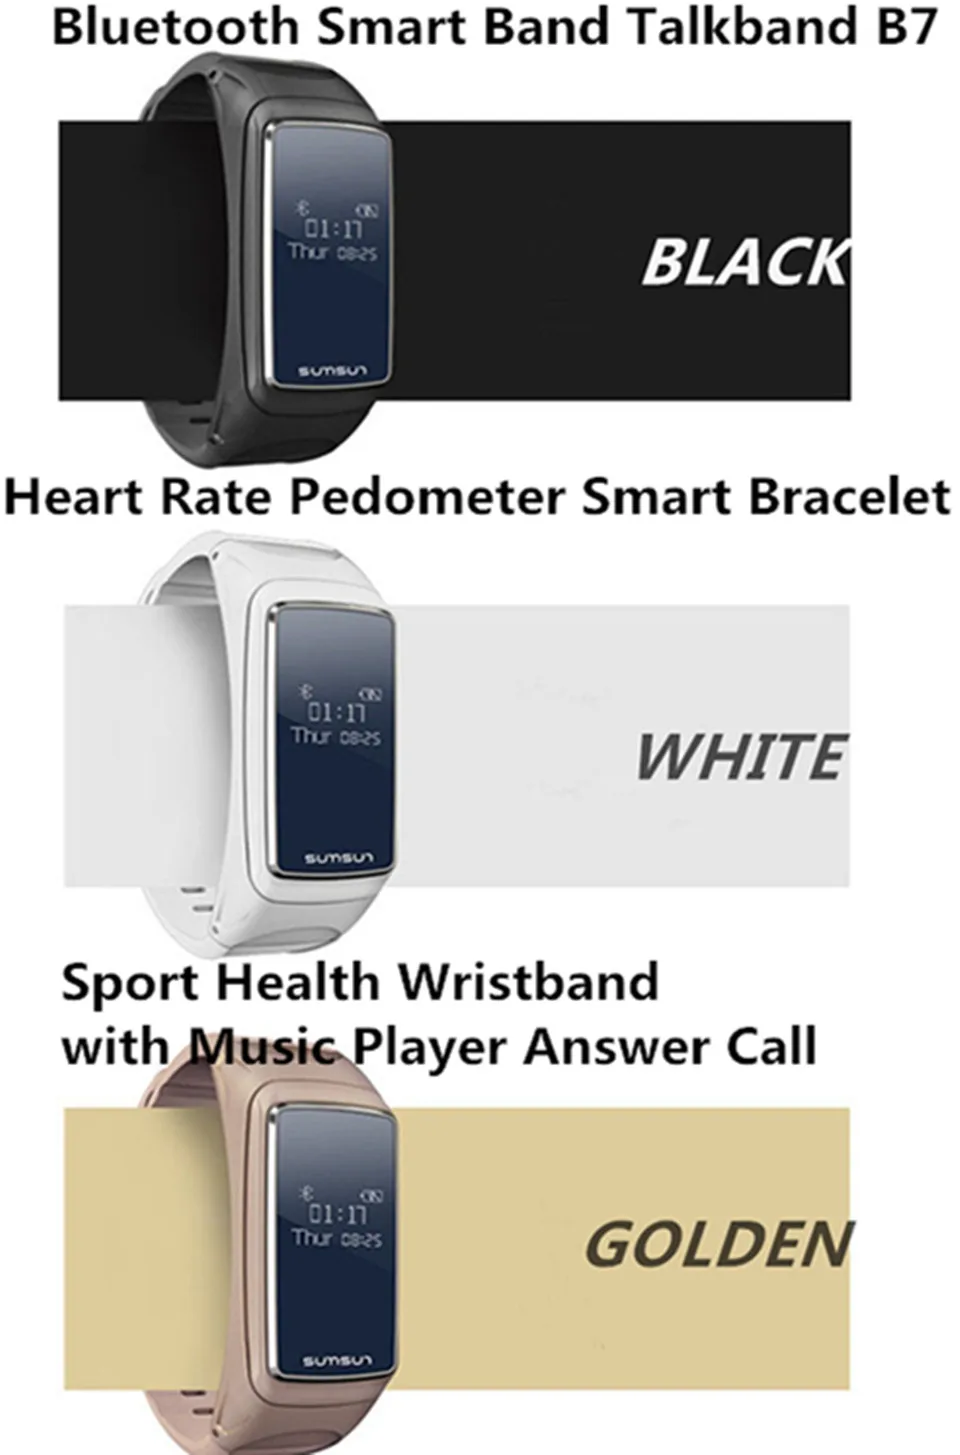 B7 Bluetooth Smart Band Talkband монитор сердечного ритма Sport здоровья Smartband часы браслет с плеера браслет pk